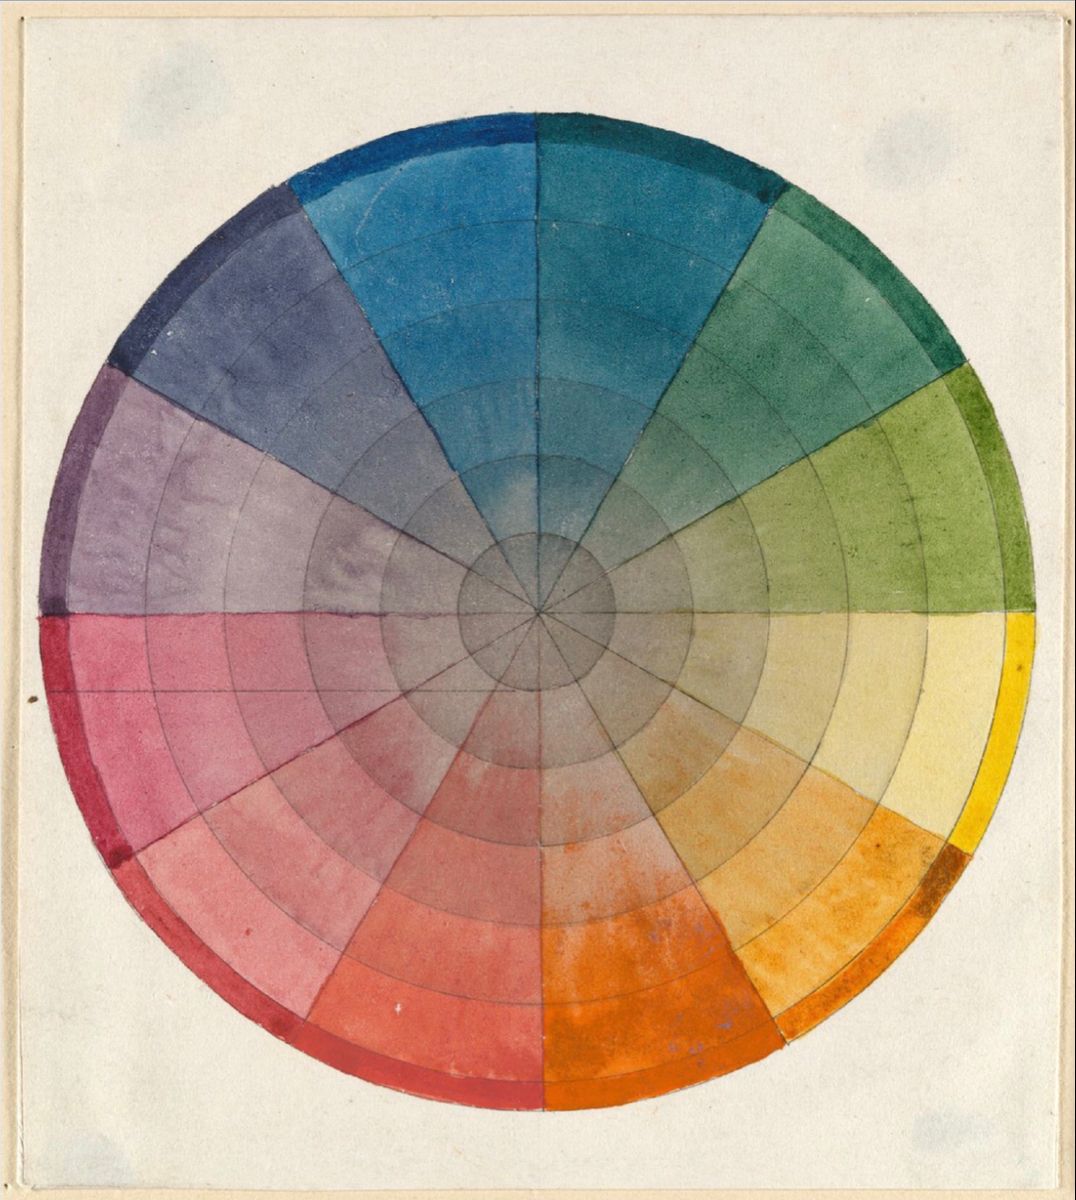 A watercolor color wheel of ROYGBIV